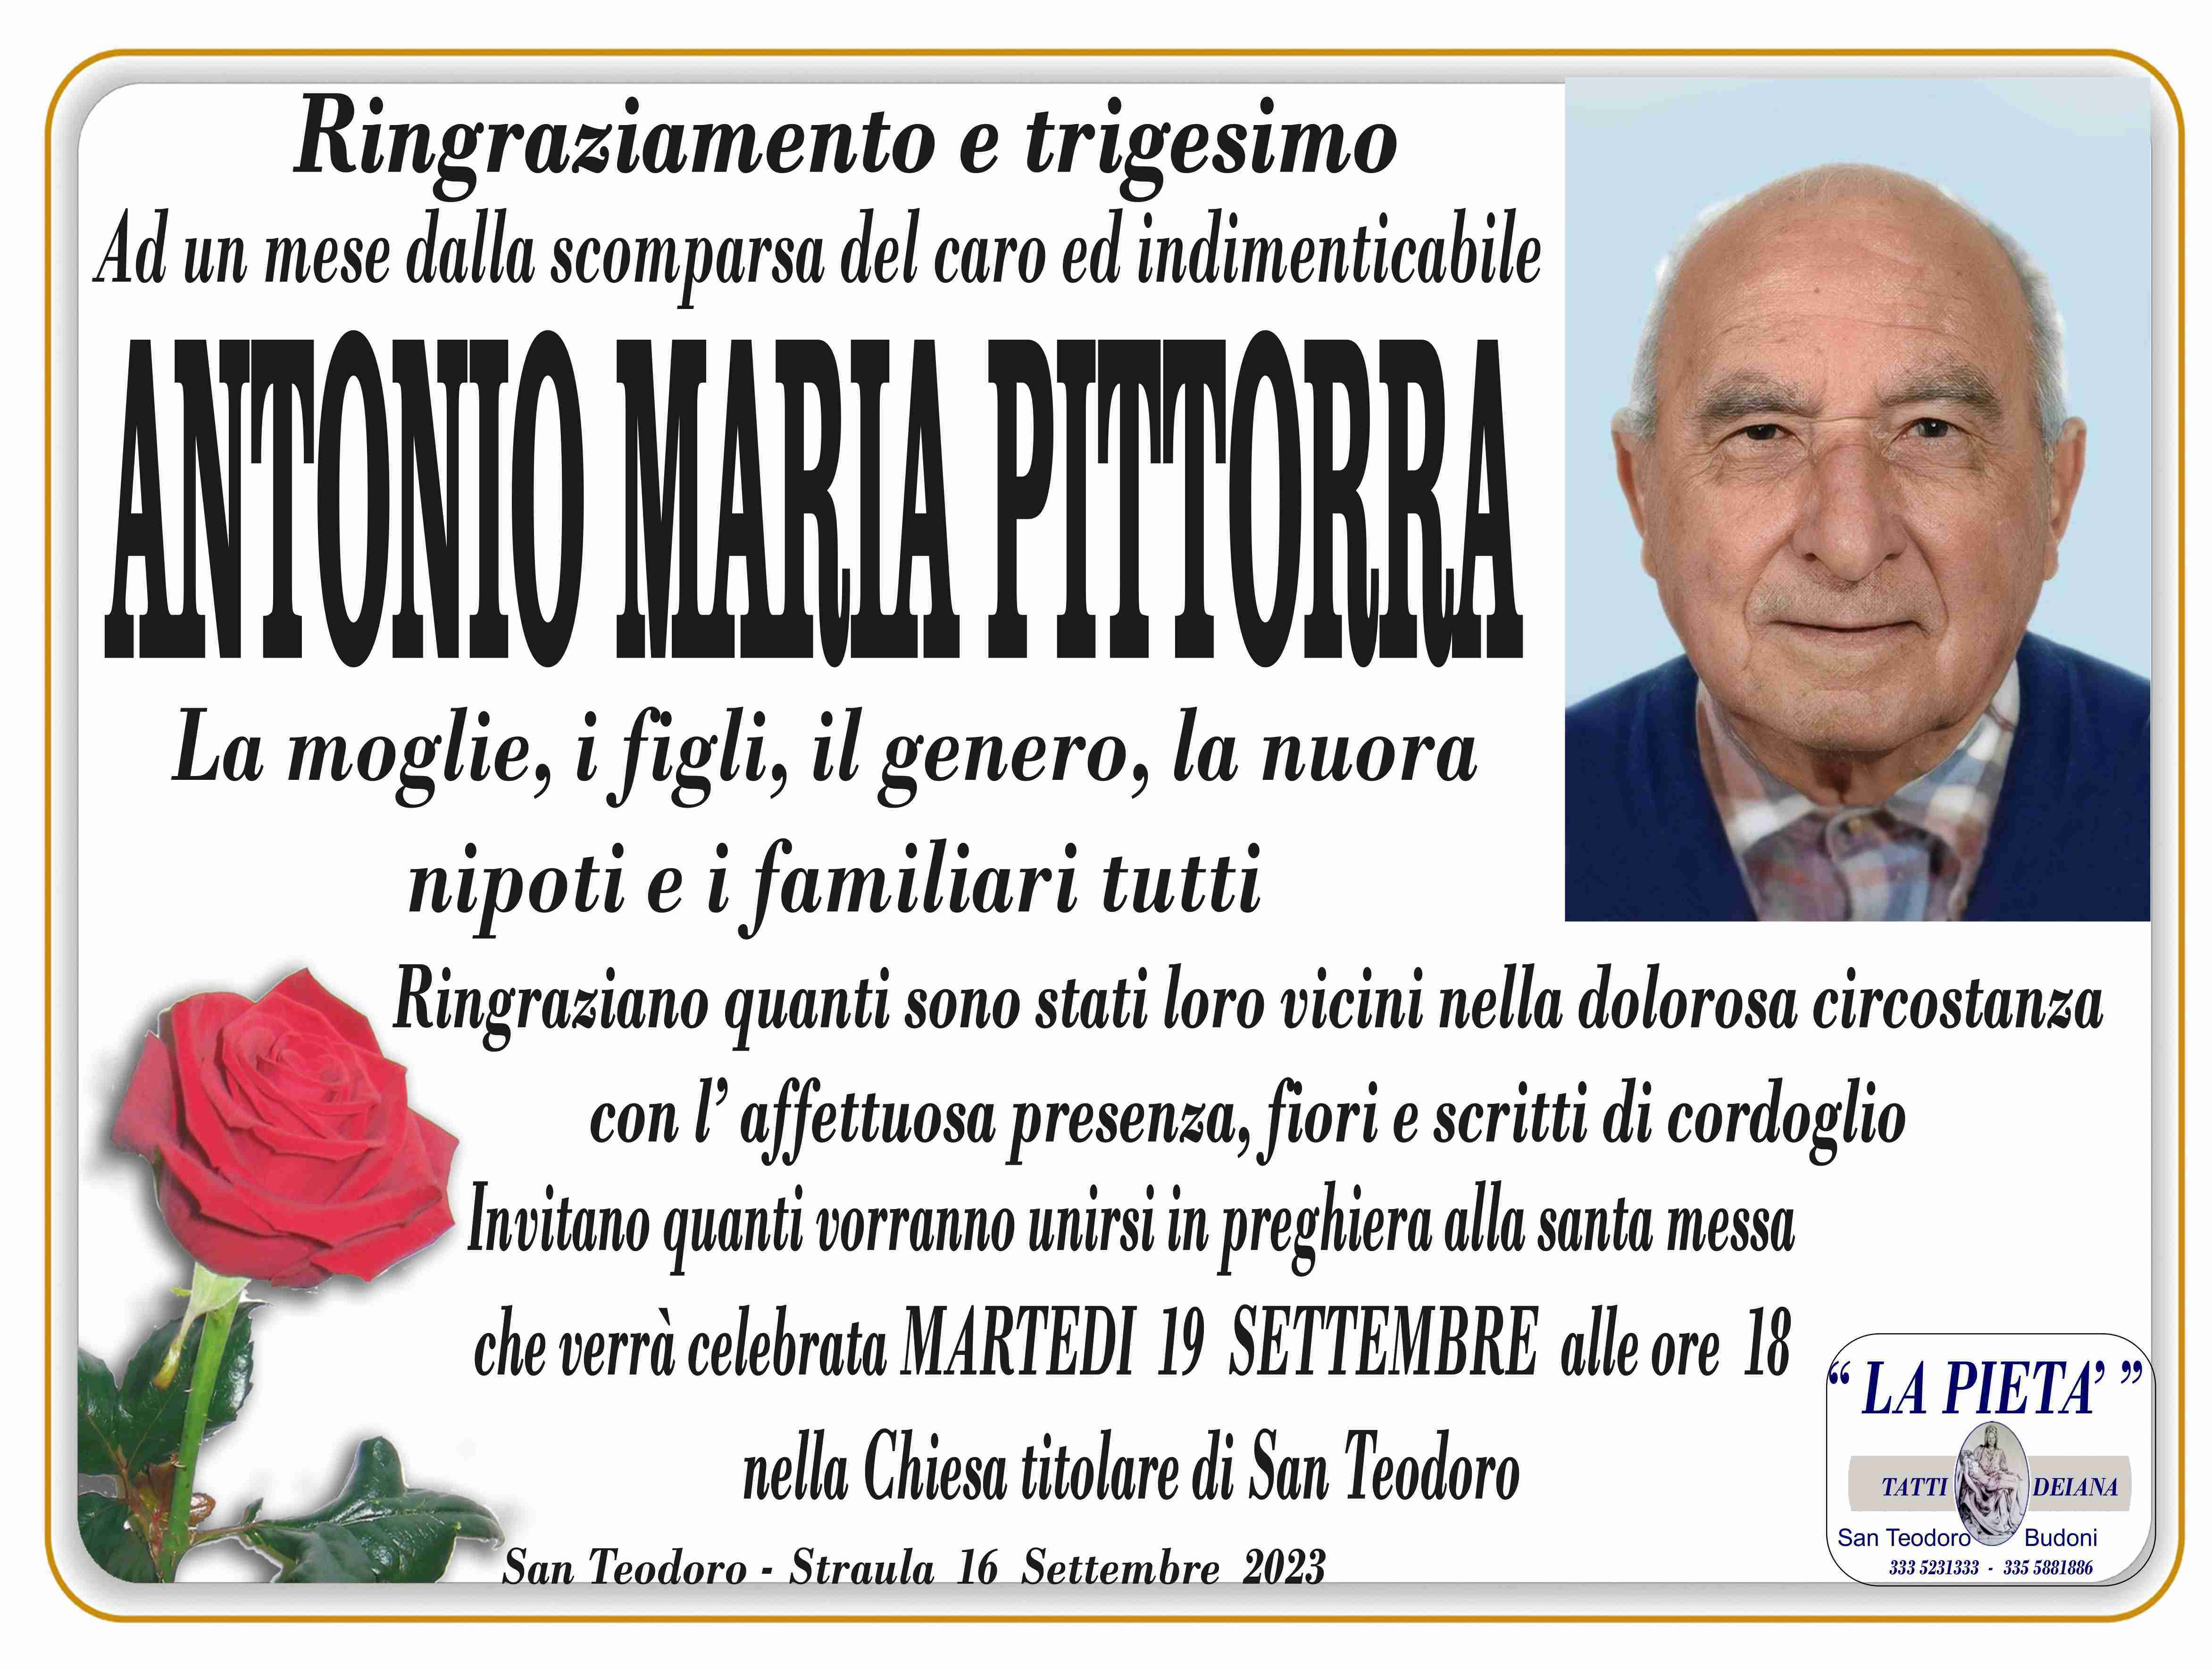 Antonio Maria Pittorra